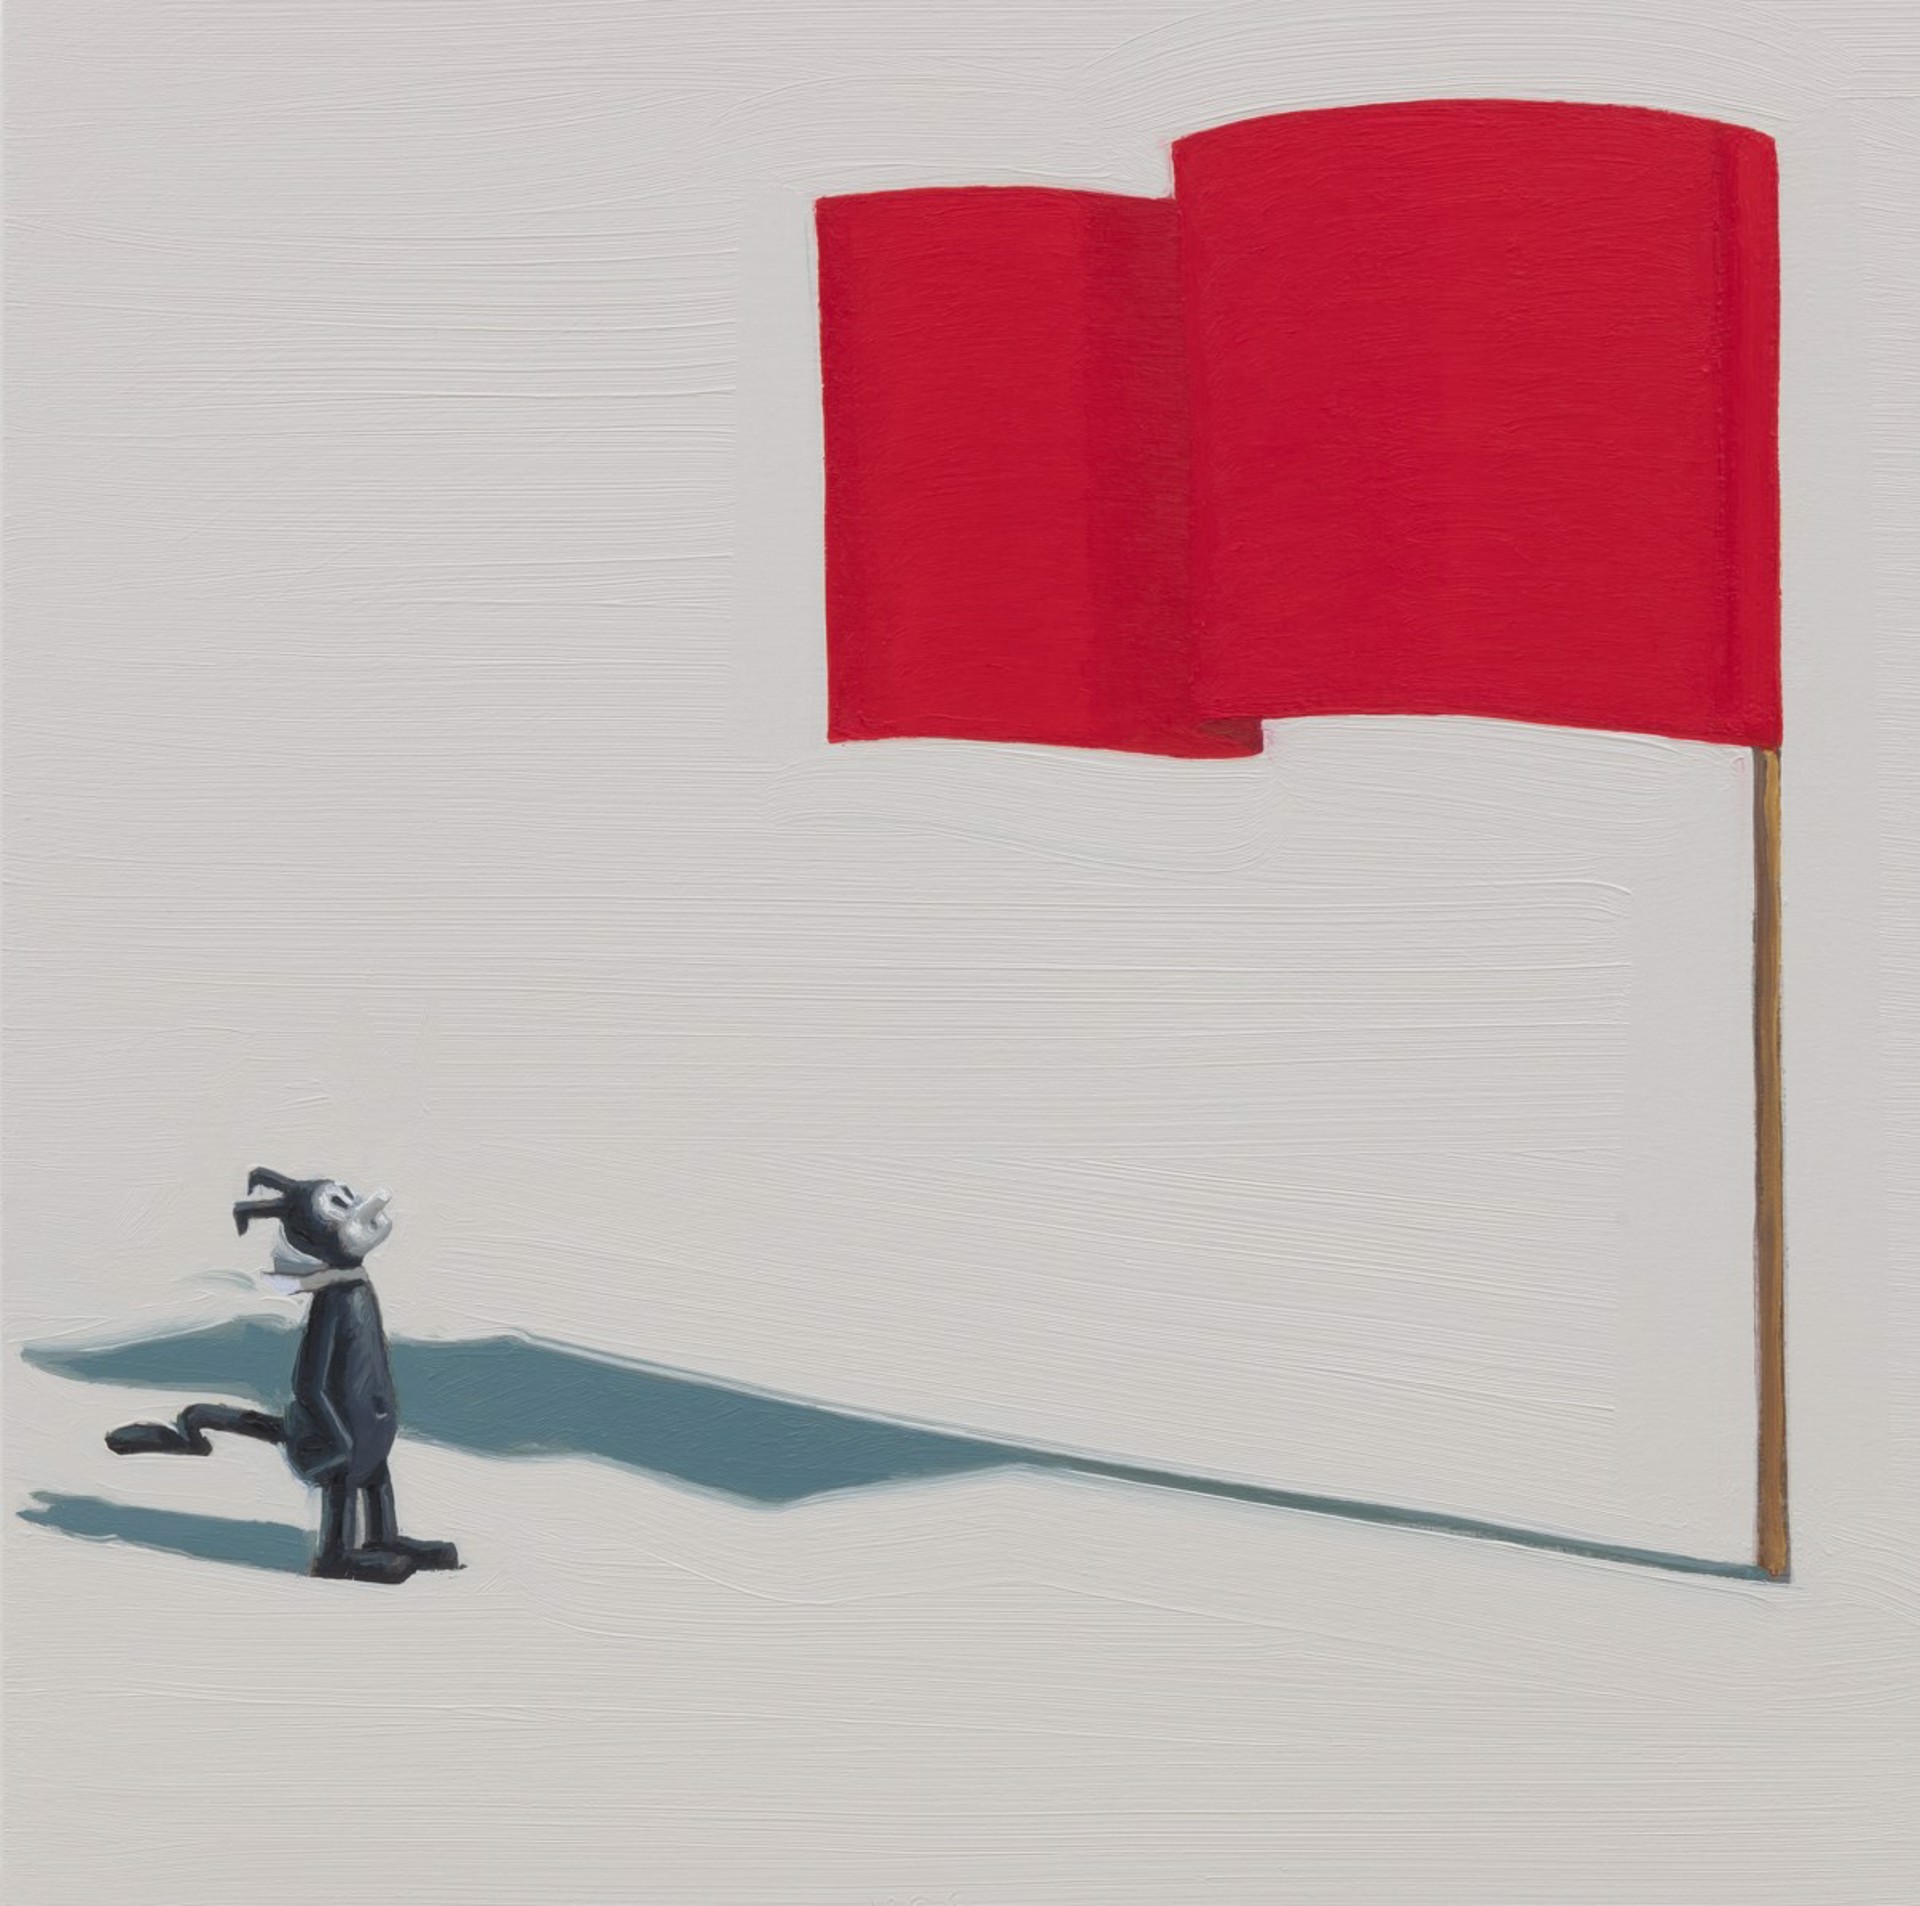 Huge Red Flag by Vonn Cummings Sumner